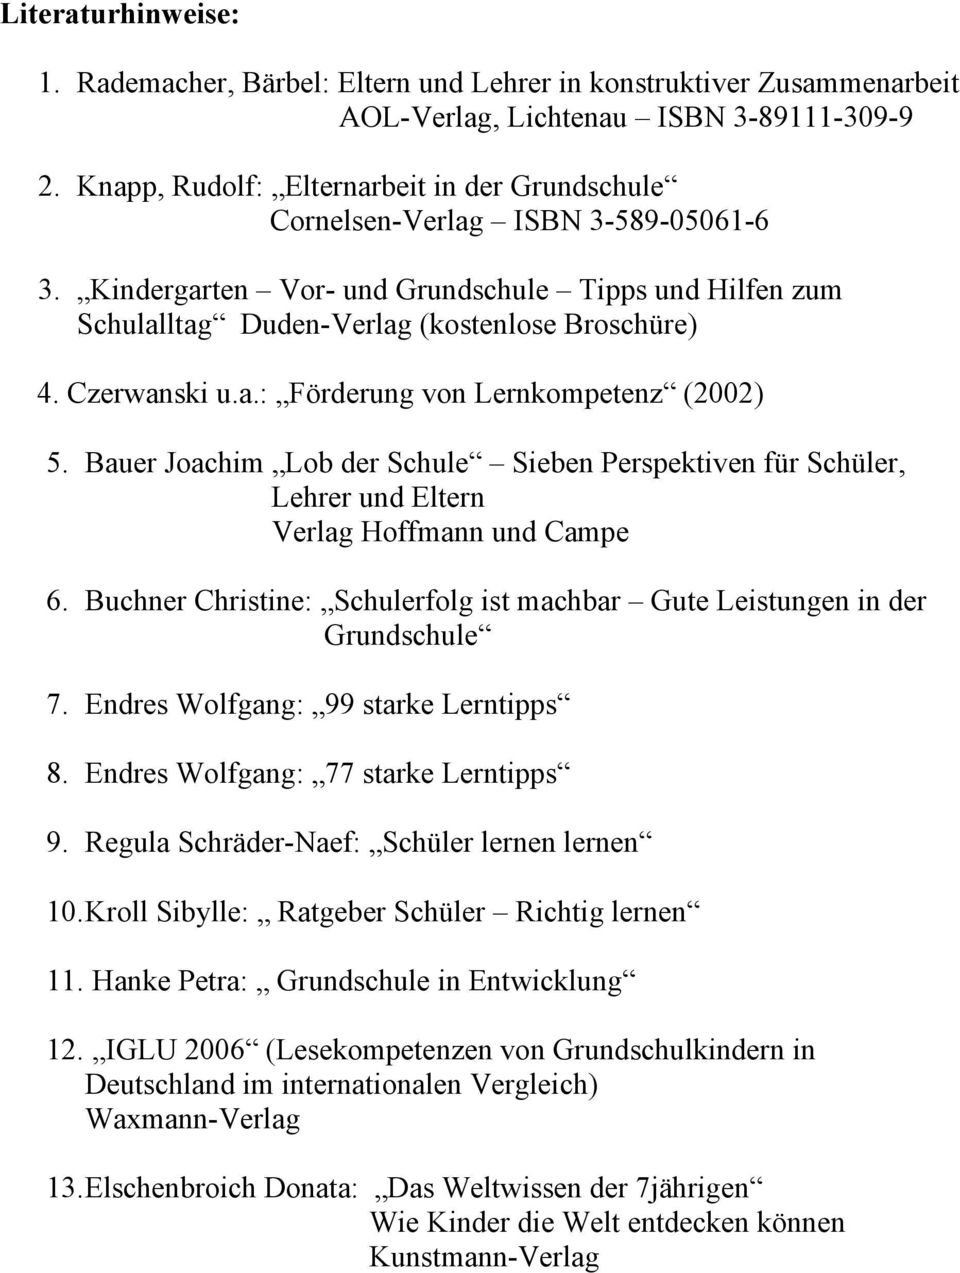 Czerwanski u.a.: Förderung von Lernkompetenz (2002) 5. Bauer Joachim Lob der Schule Sieben Perspektiven für Schüler, Lehrer und Eltern Verlag Hoffmann und Campe 6.